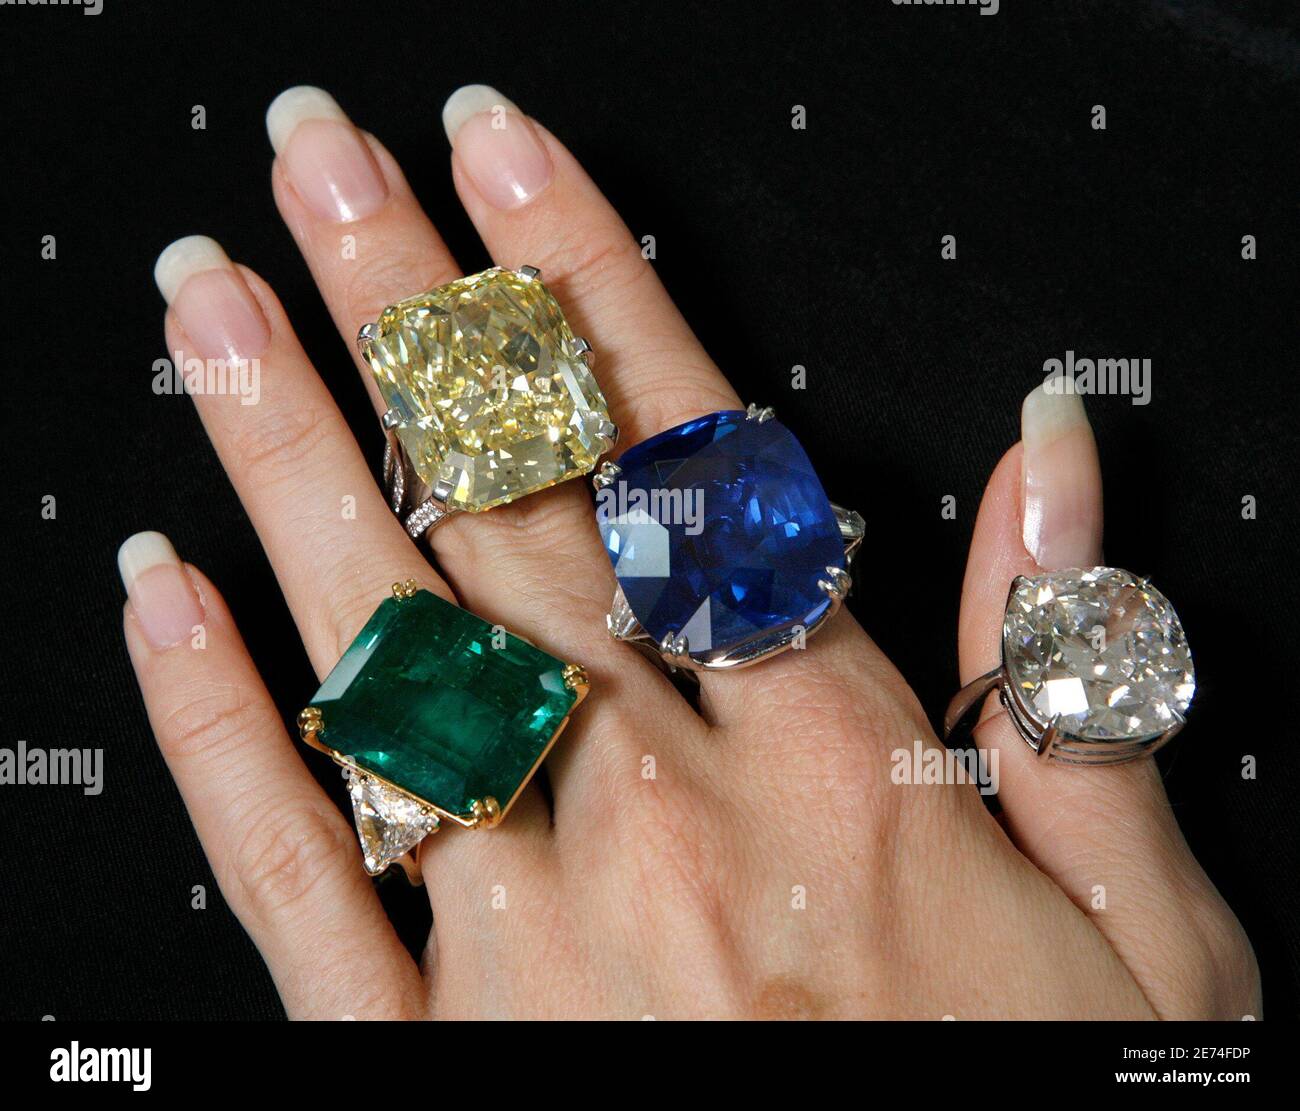 Helen Molesworth, spécialiste des bijoux de Christie, présente un anneau d'émeraude et de diamant (L) estimé à 600,000 $ - à 800,000 $; un anneau de diamant de couleur (2L) estimé à 1,400,000 $ - à 1,650,000 $; Un anneau saphir (2R) estimé à 300,000 $ - à 410,000 $ et un anneau diamant simple pierre (R) estimé à 600,000 $ - à 680,000 $ pendant un aperçu de vente aux enchères à Genève le 11 mai 2007. Les bijoux seront vendus lors d'une vente à Genève le 17 mai 2007. REUTERS/Denis Balibouse (SUISSE) Banque D'Images